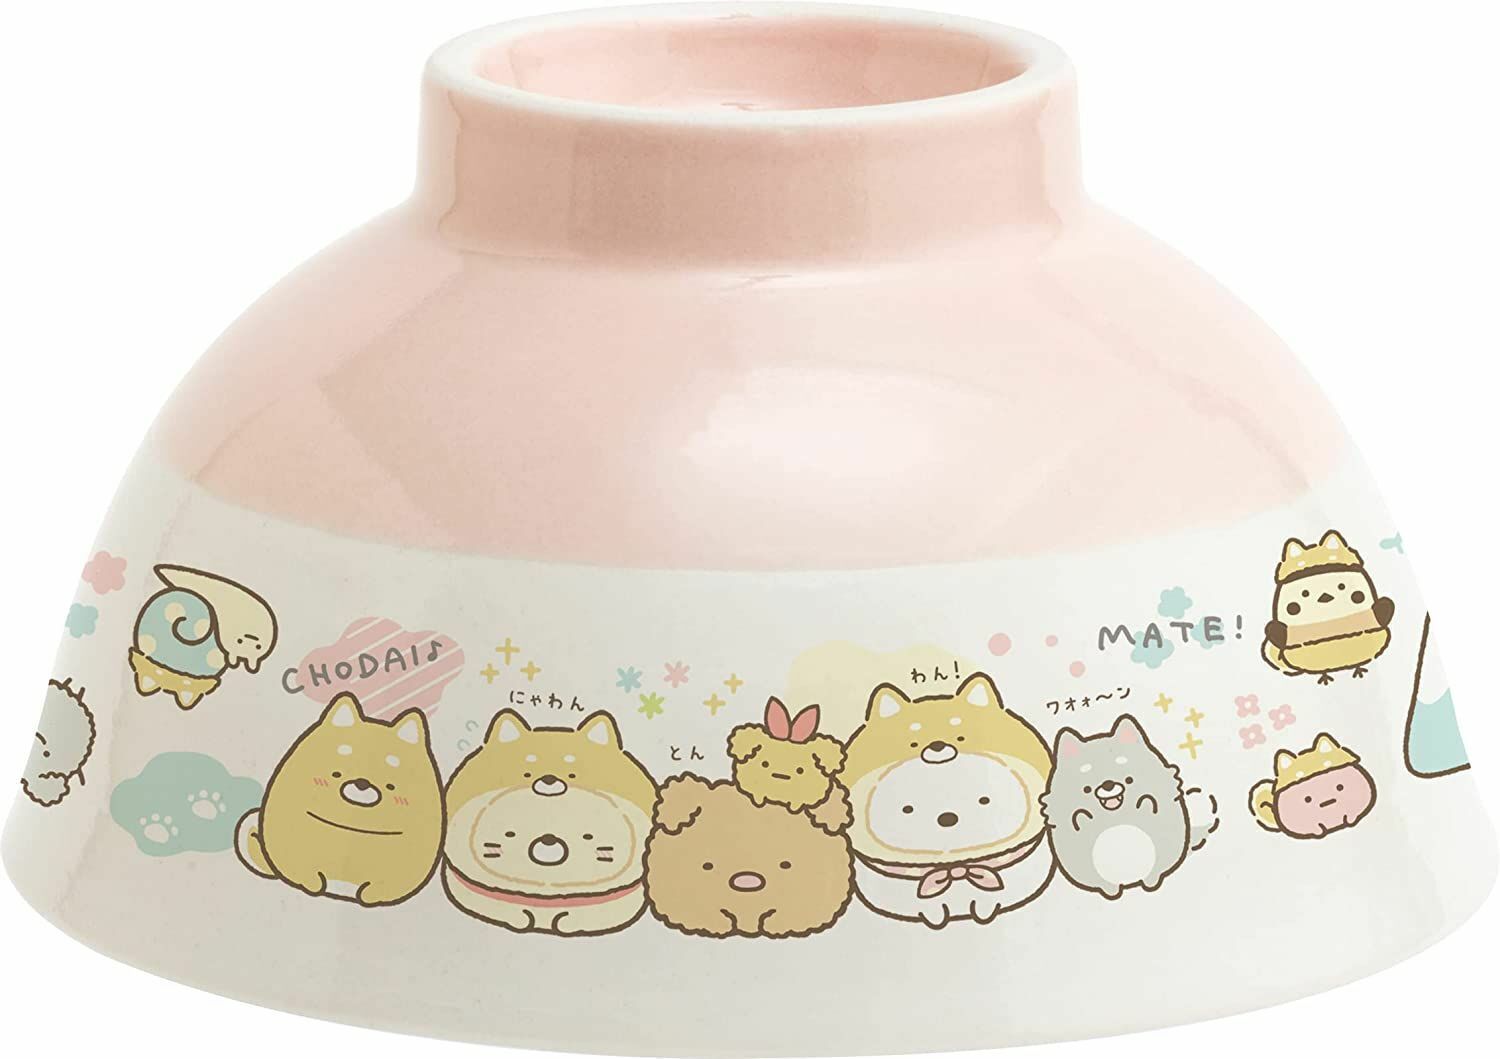 San-X Sumikko Gurashi Dog Collabo Rice Bowl Pink TK16601 New Japan | eBay